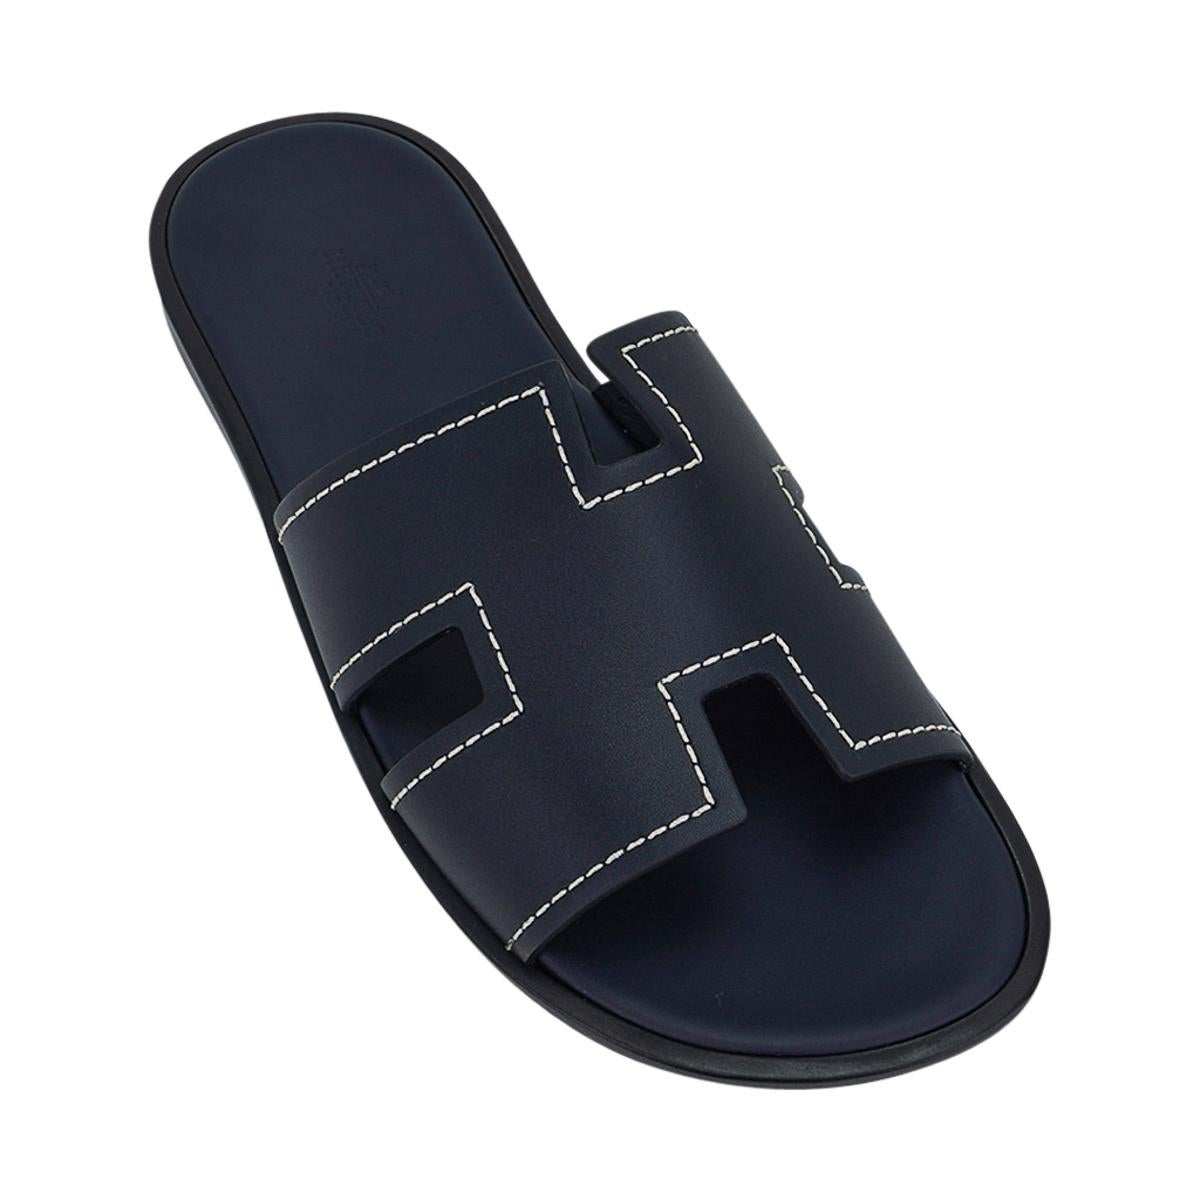 Mightychic propose une paire de sandales Hermes Izmir pour homme en Bleu Marine.
L'emblématique H découpé sur le dessus du pied est rehaussé de surpiqûres blanches.
Des couleurs sophistiquées dans une silhouette qui convient à toutes les